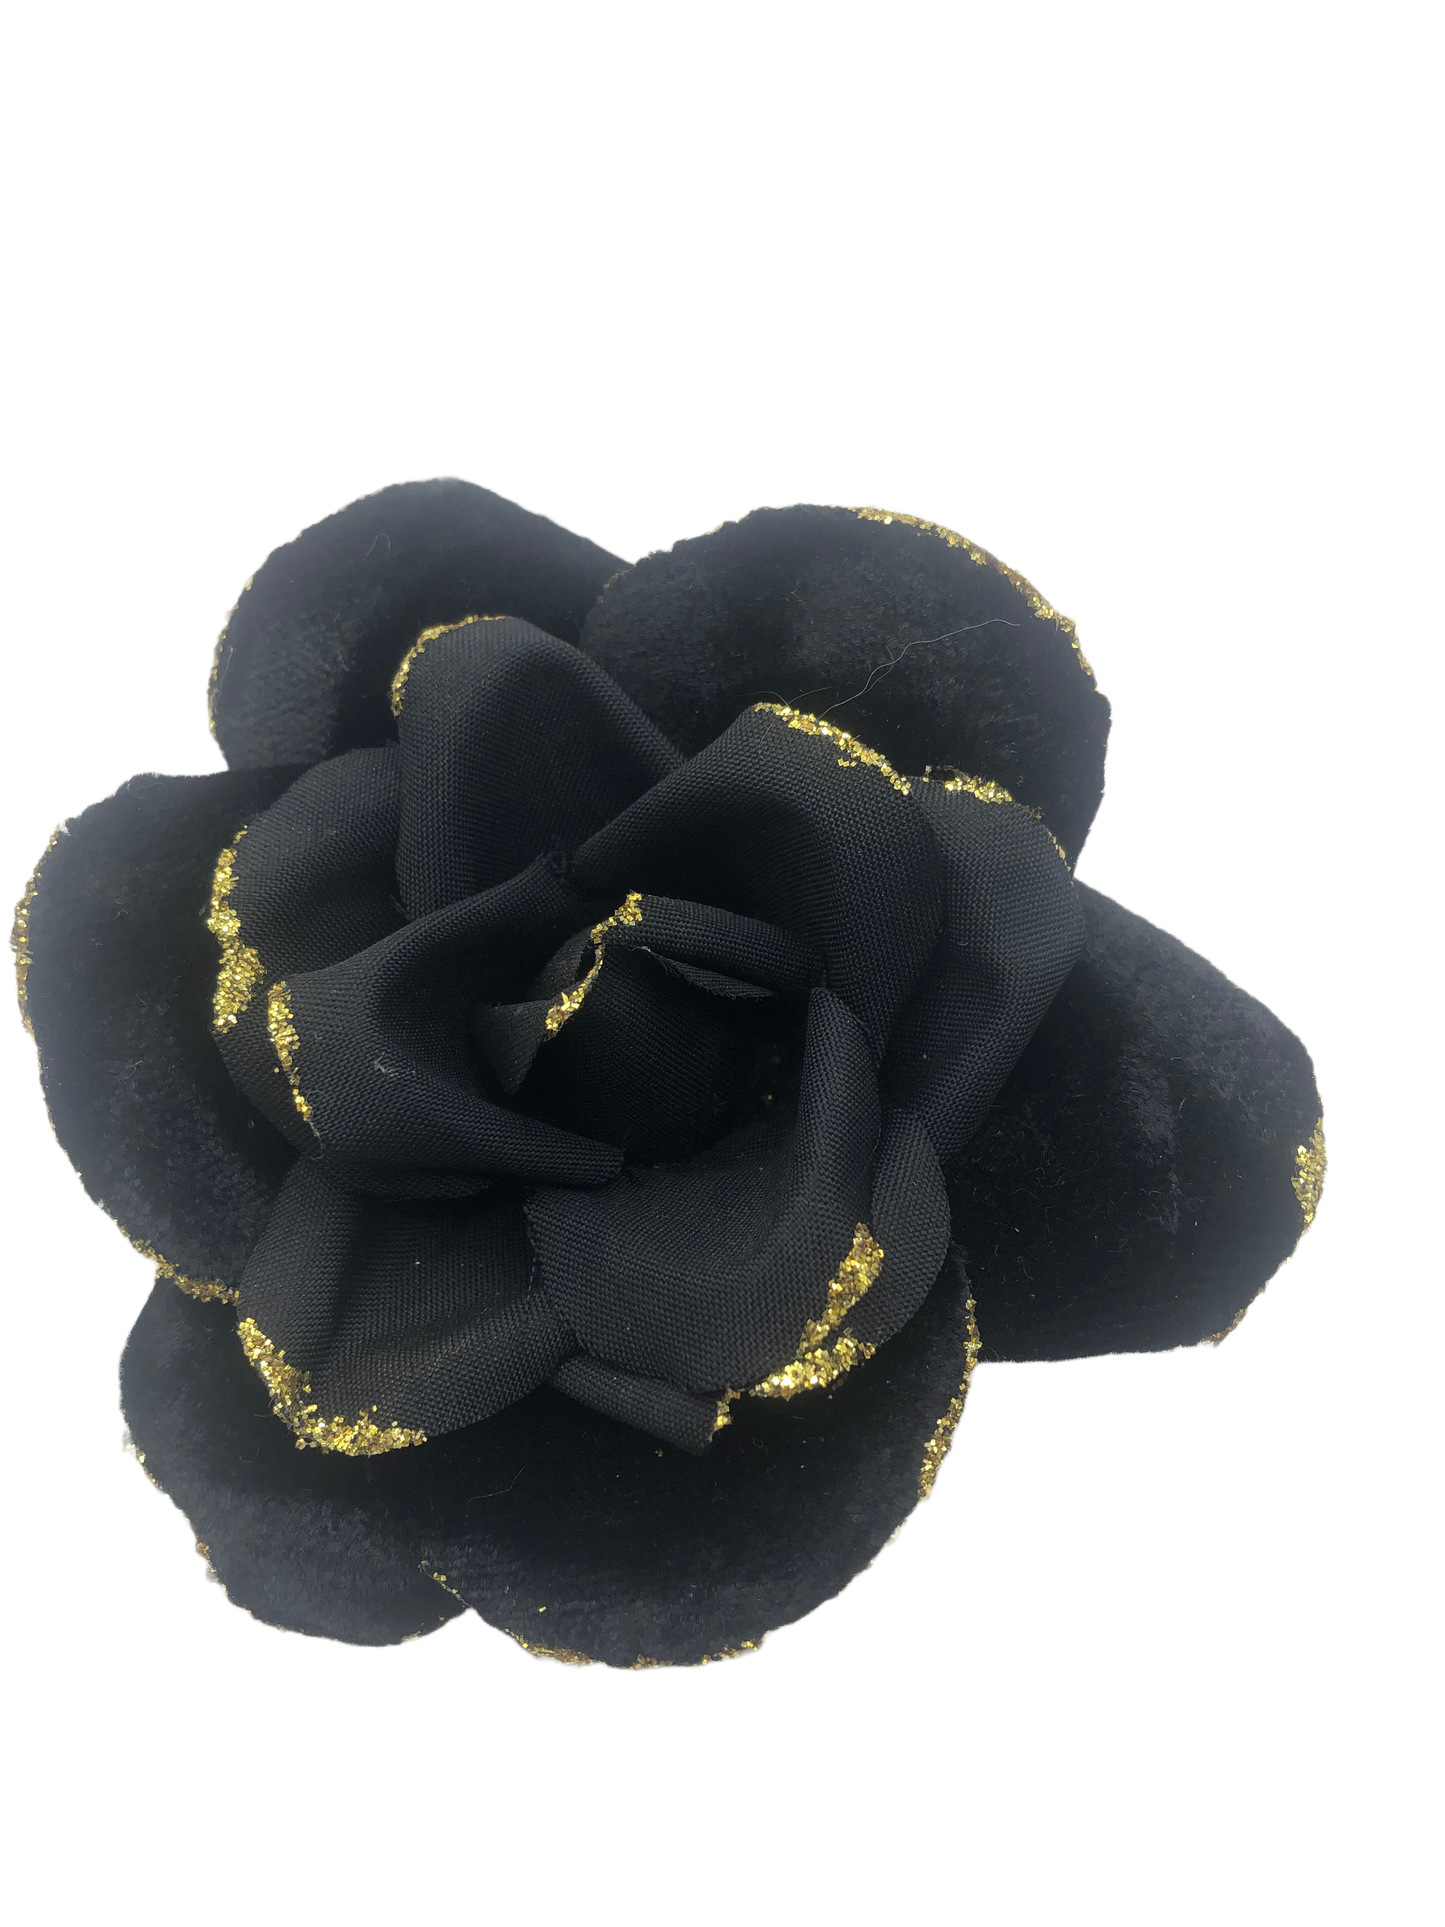 Karin's Garden 3" Glam Velvet Blend Black Metallic Edge Rose Pin Brooch Clip.  Made in the USA.